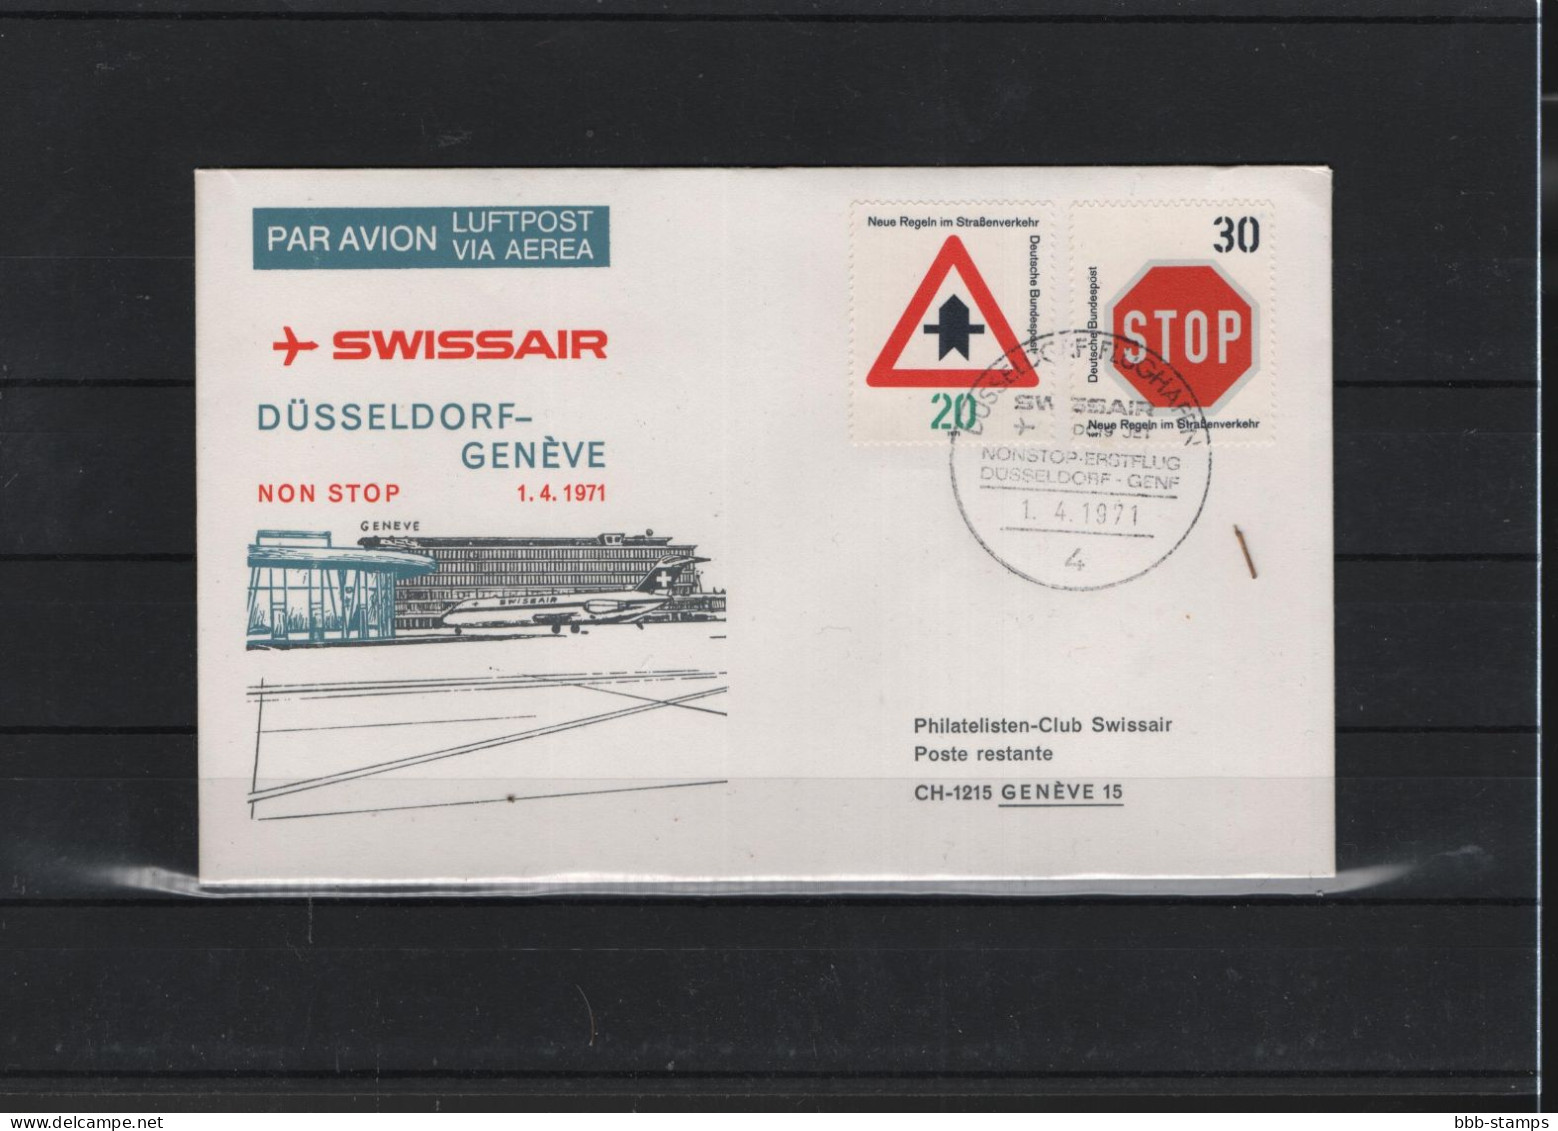 Schweiz Luftpost FFC Swissair 1.4.1971 Düsseldorf - Genf - First Flight Covers